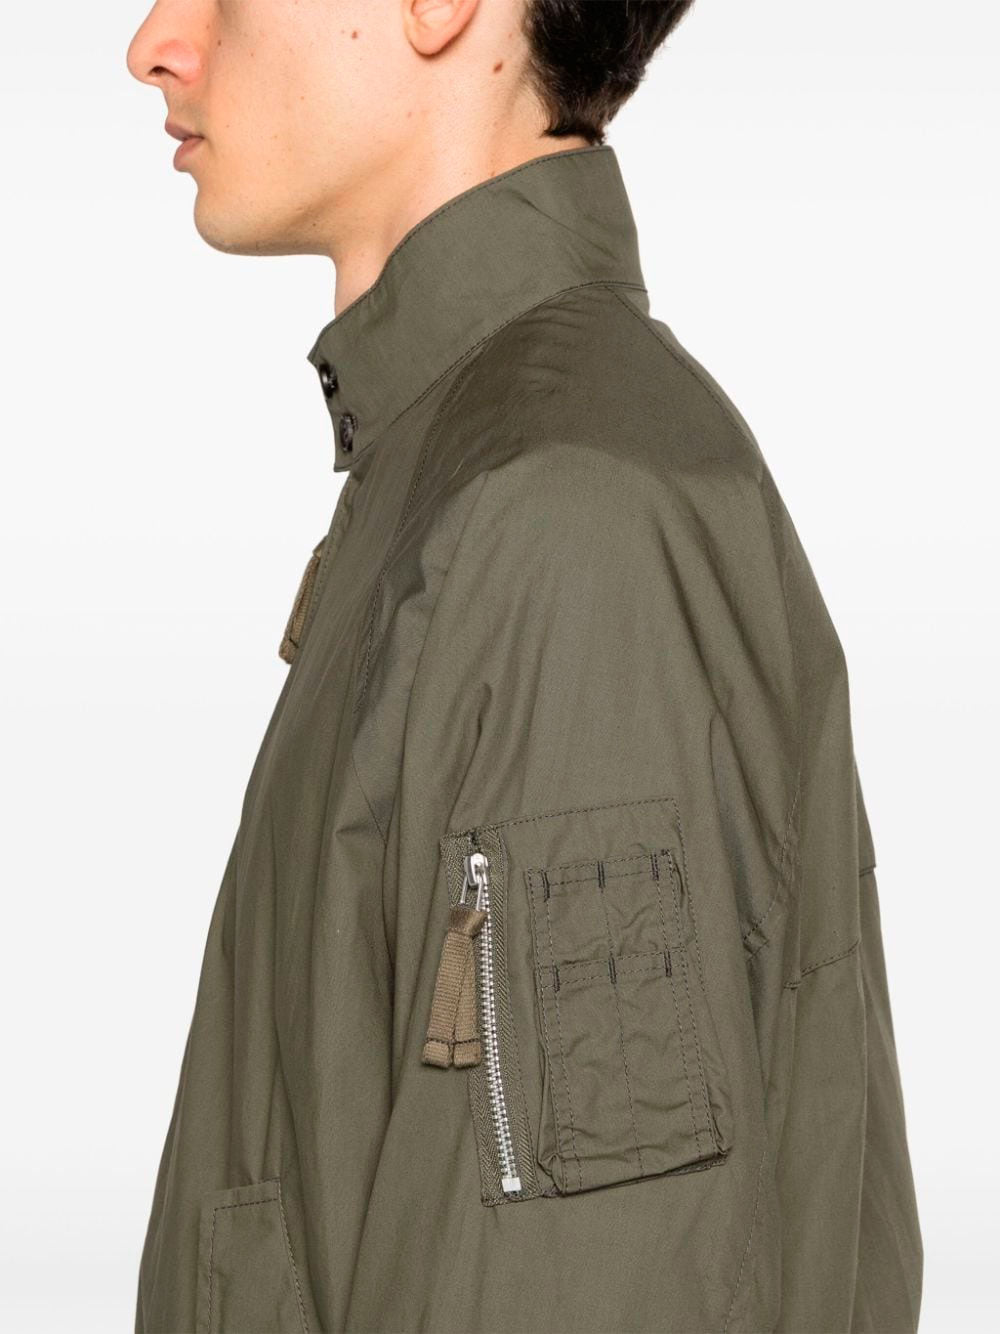 Zip-up bomber jacket